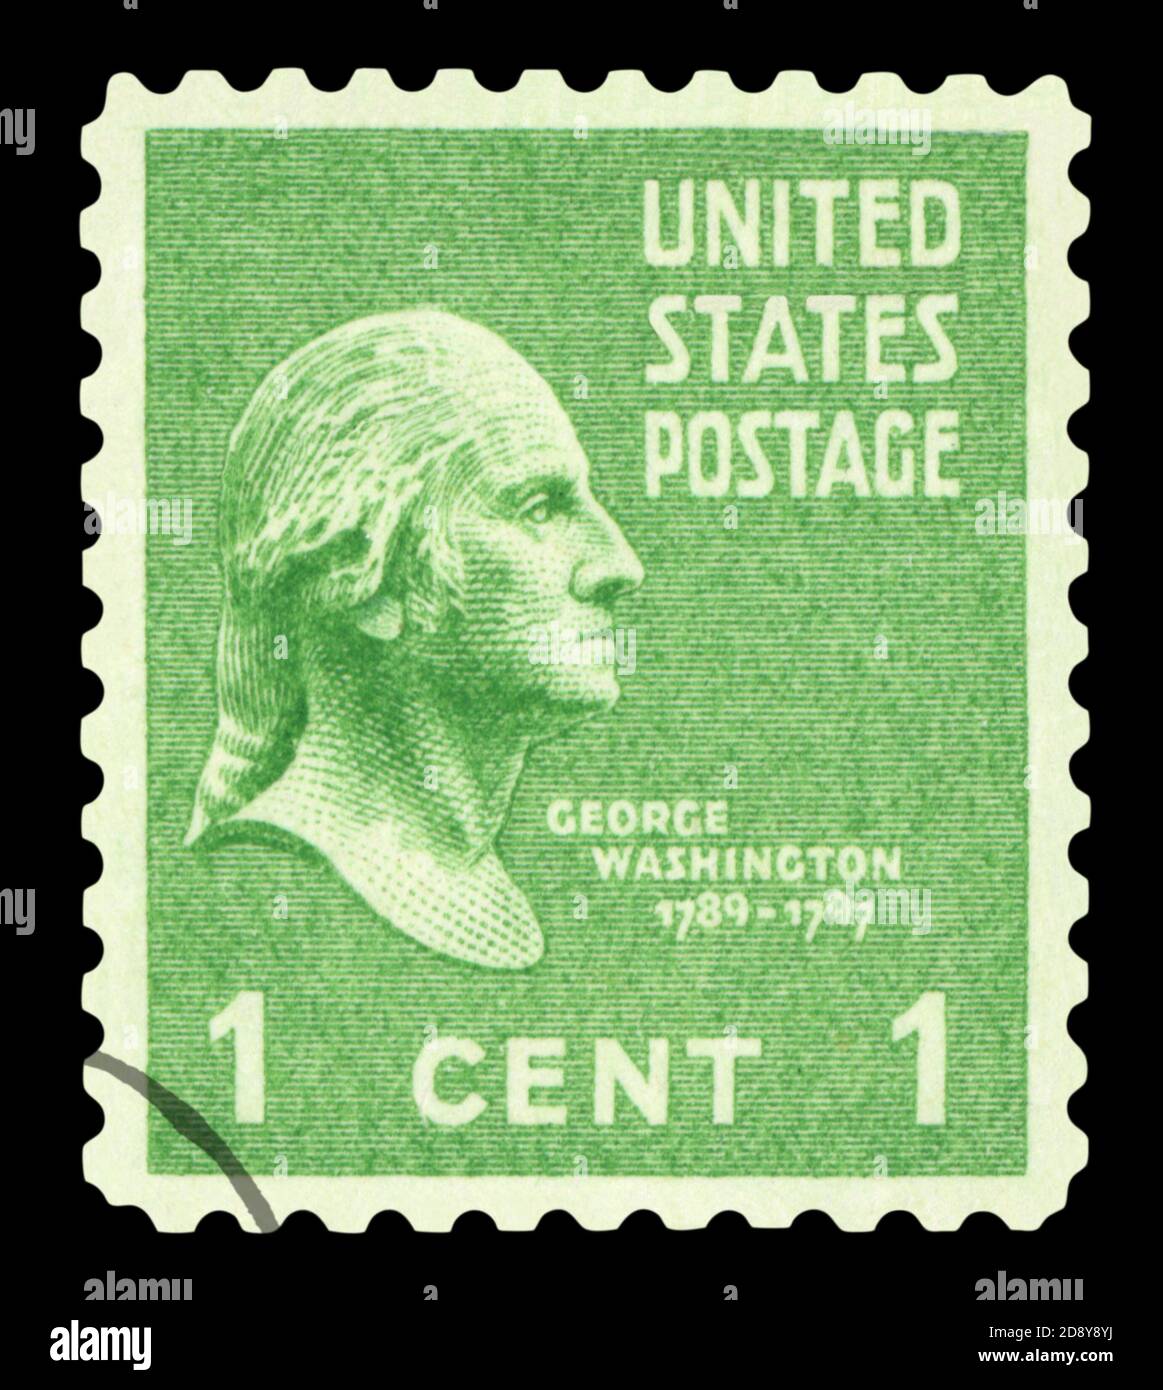 ÉTATS-UNIS D'AMÉRIQUE - VERS 1938: Timbre de poste imprimé aux États-Unis montre le premier président George Washington, vers 1938 Banque D'Images